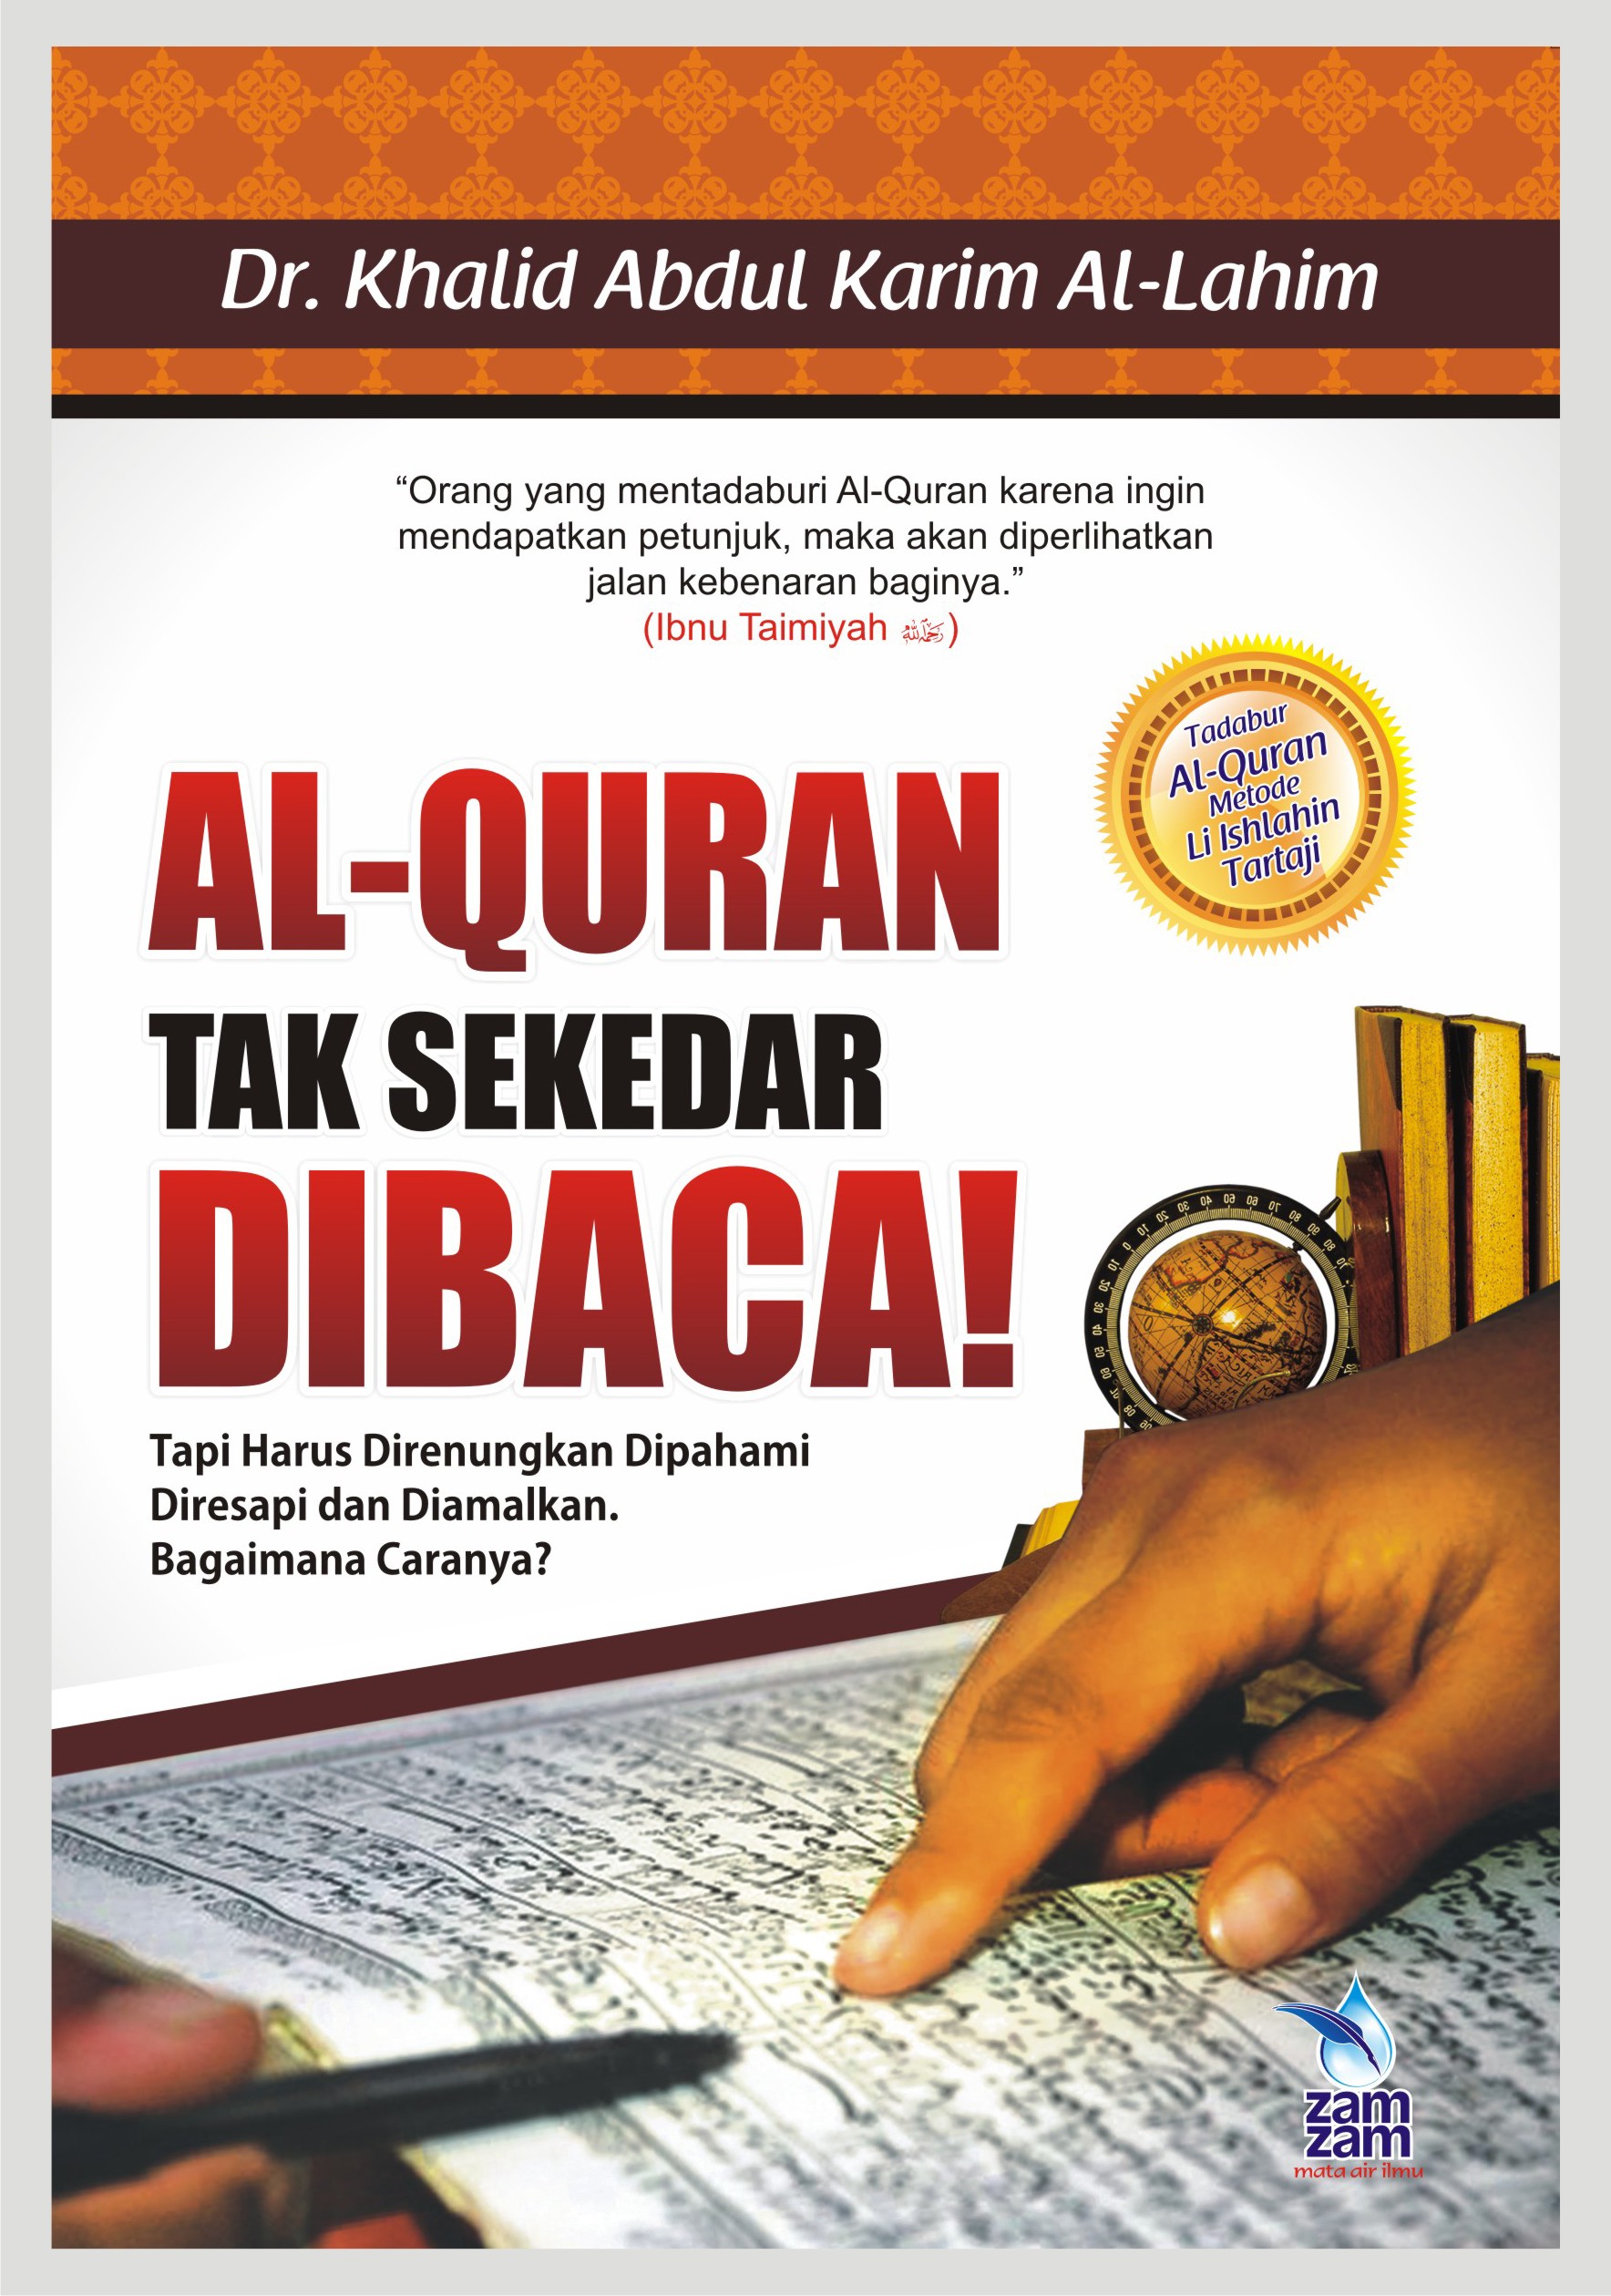 Al-Quran Tak Sekedar Dibaca